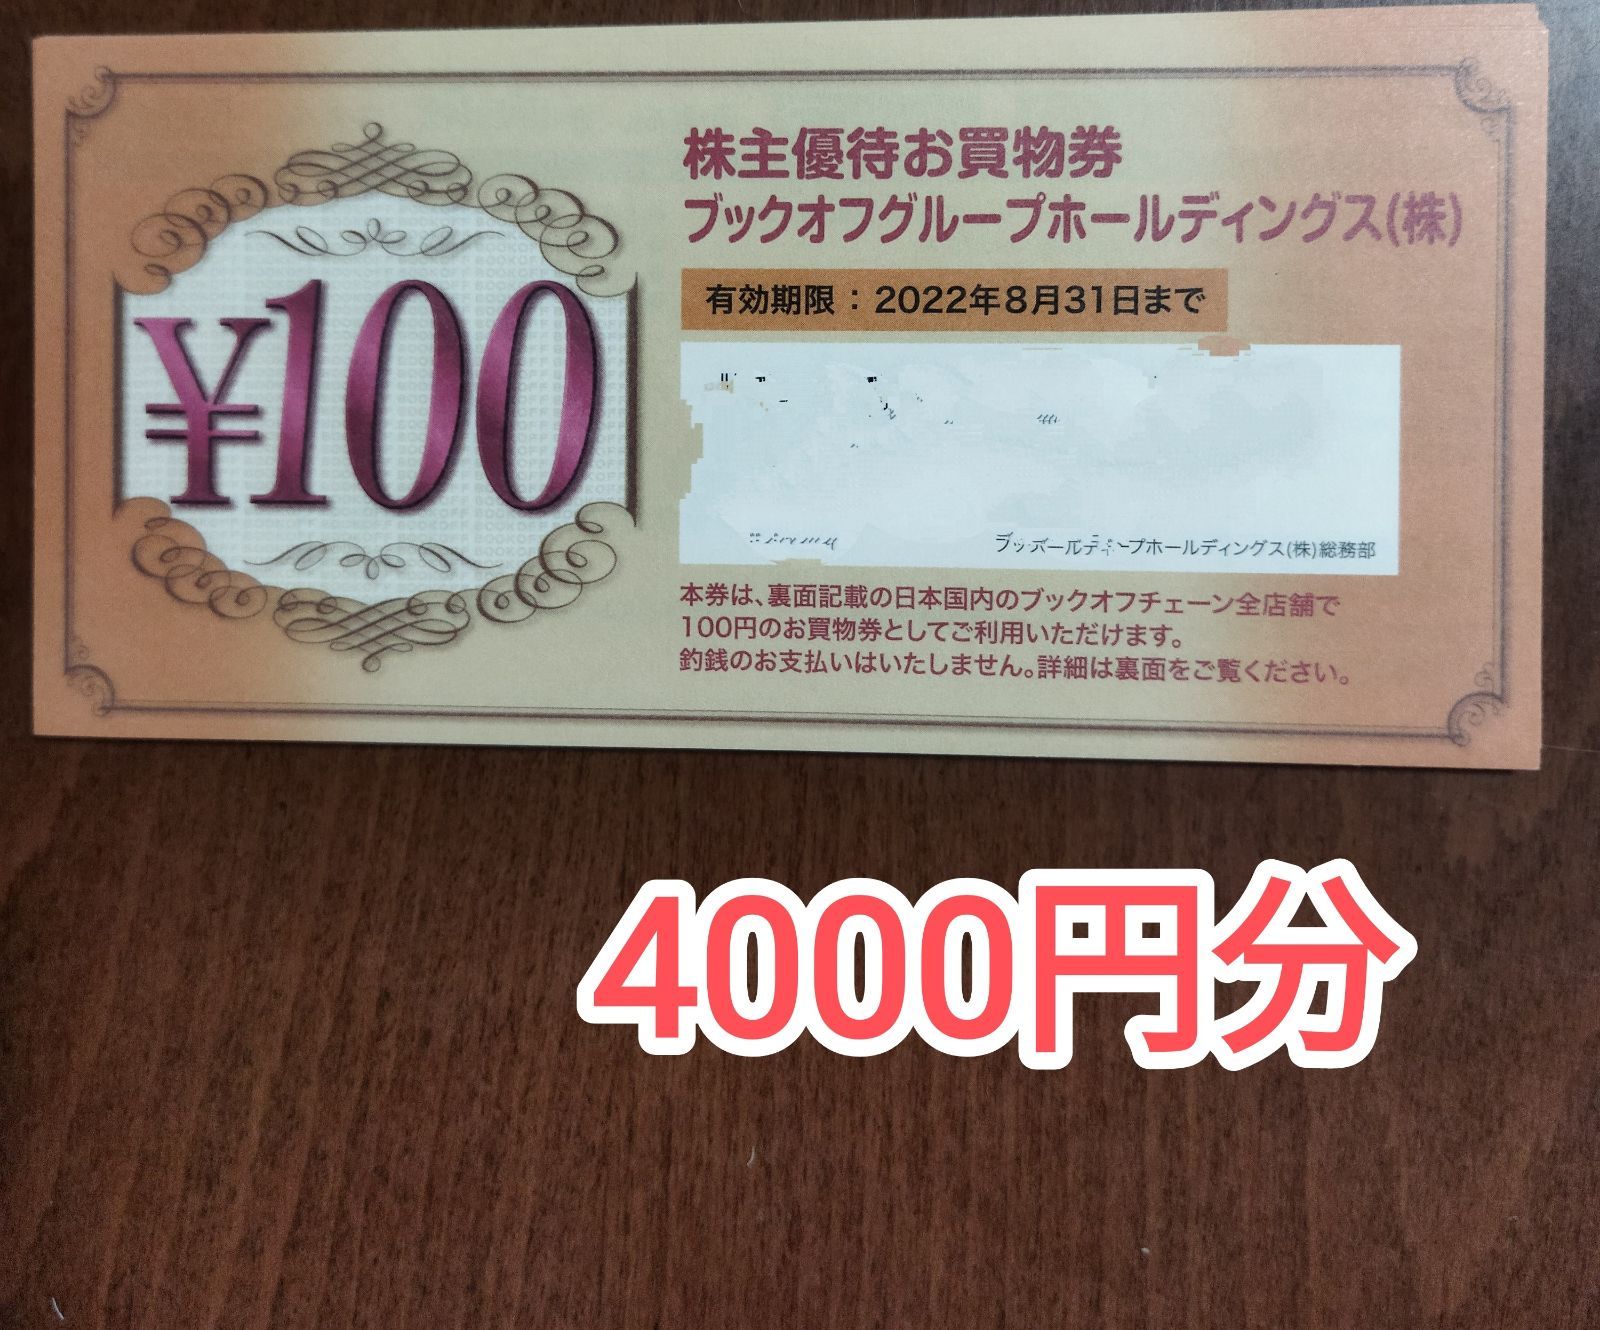 ブックオフ株主優待 4000円分 - ショッピング